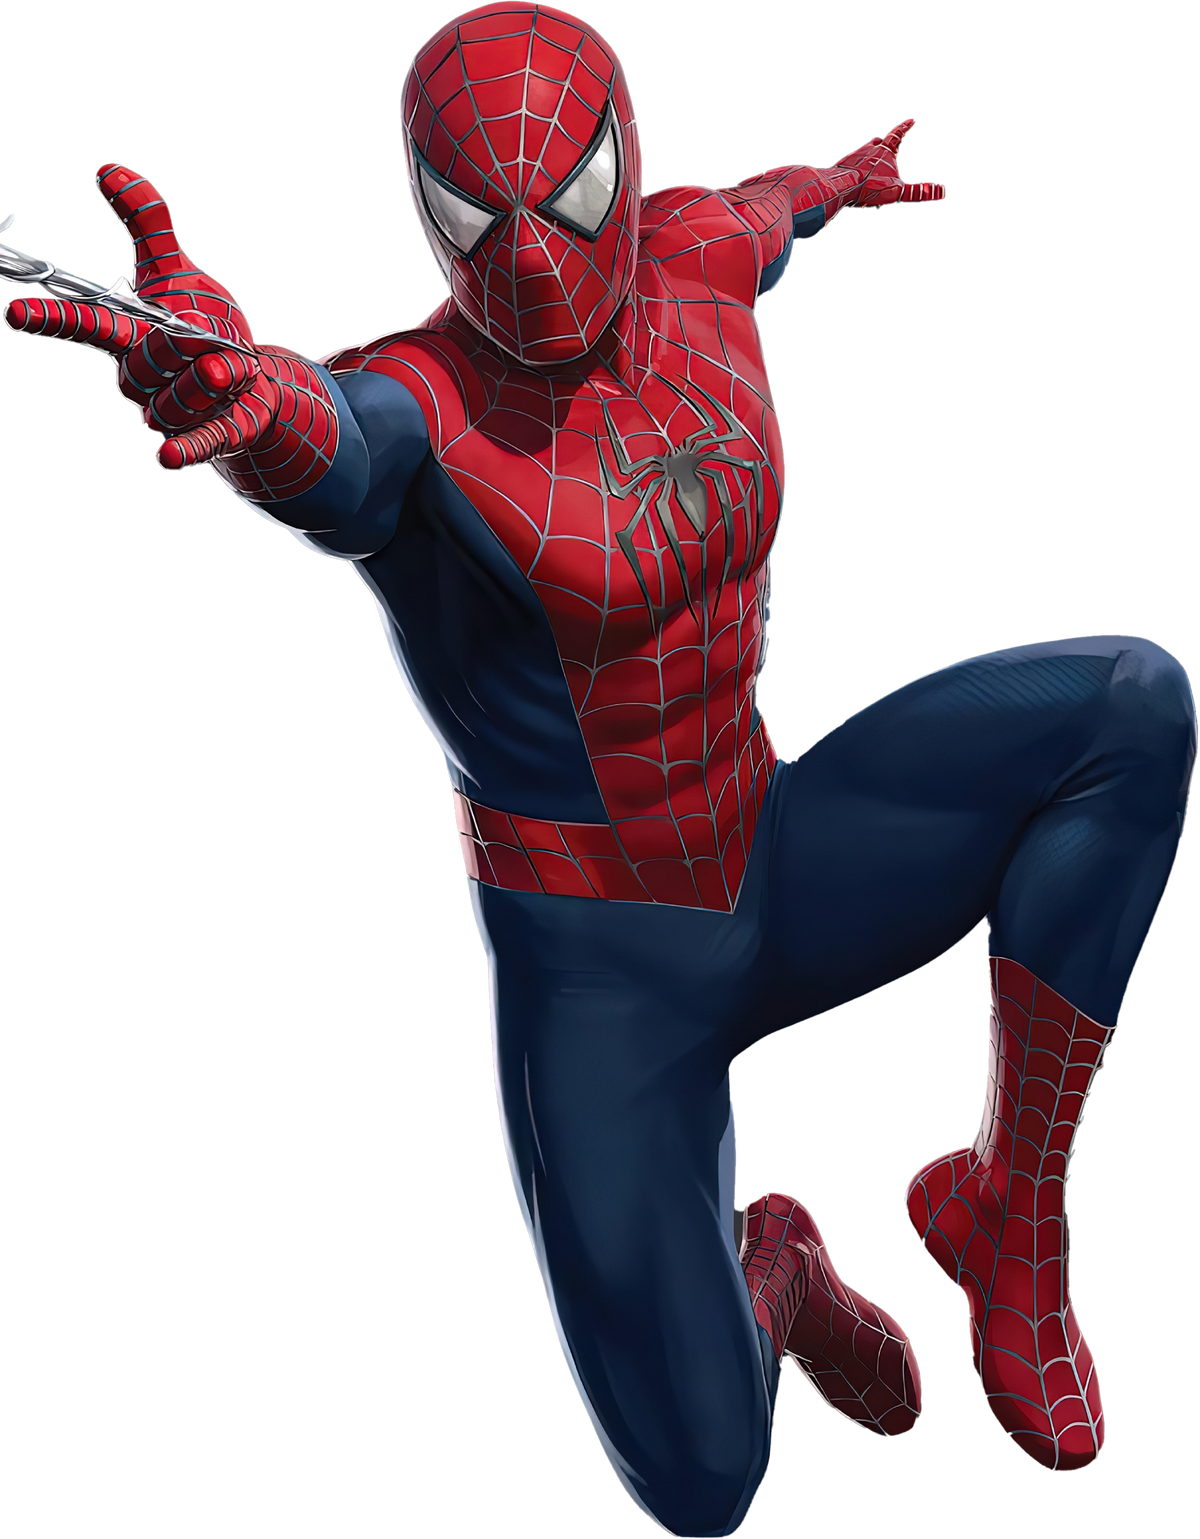 Spider-Man (2002 film) - Wikipedia